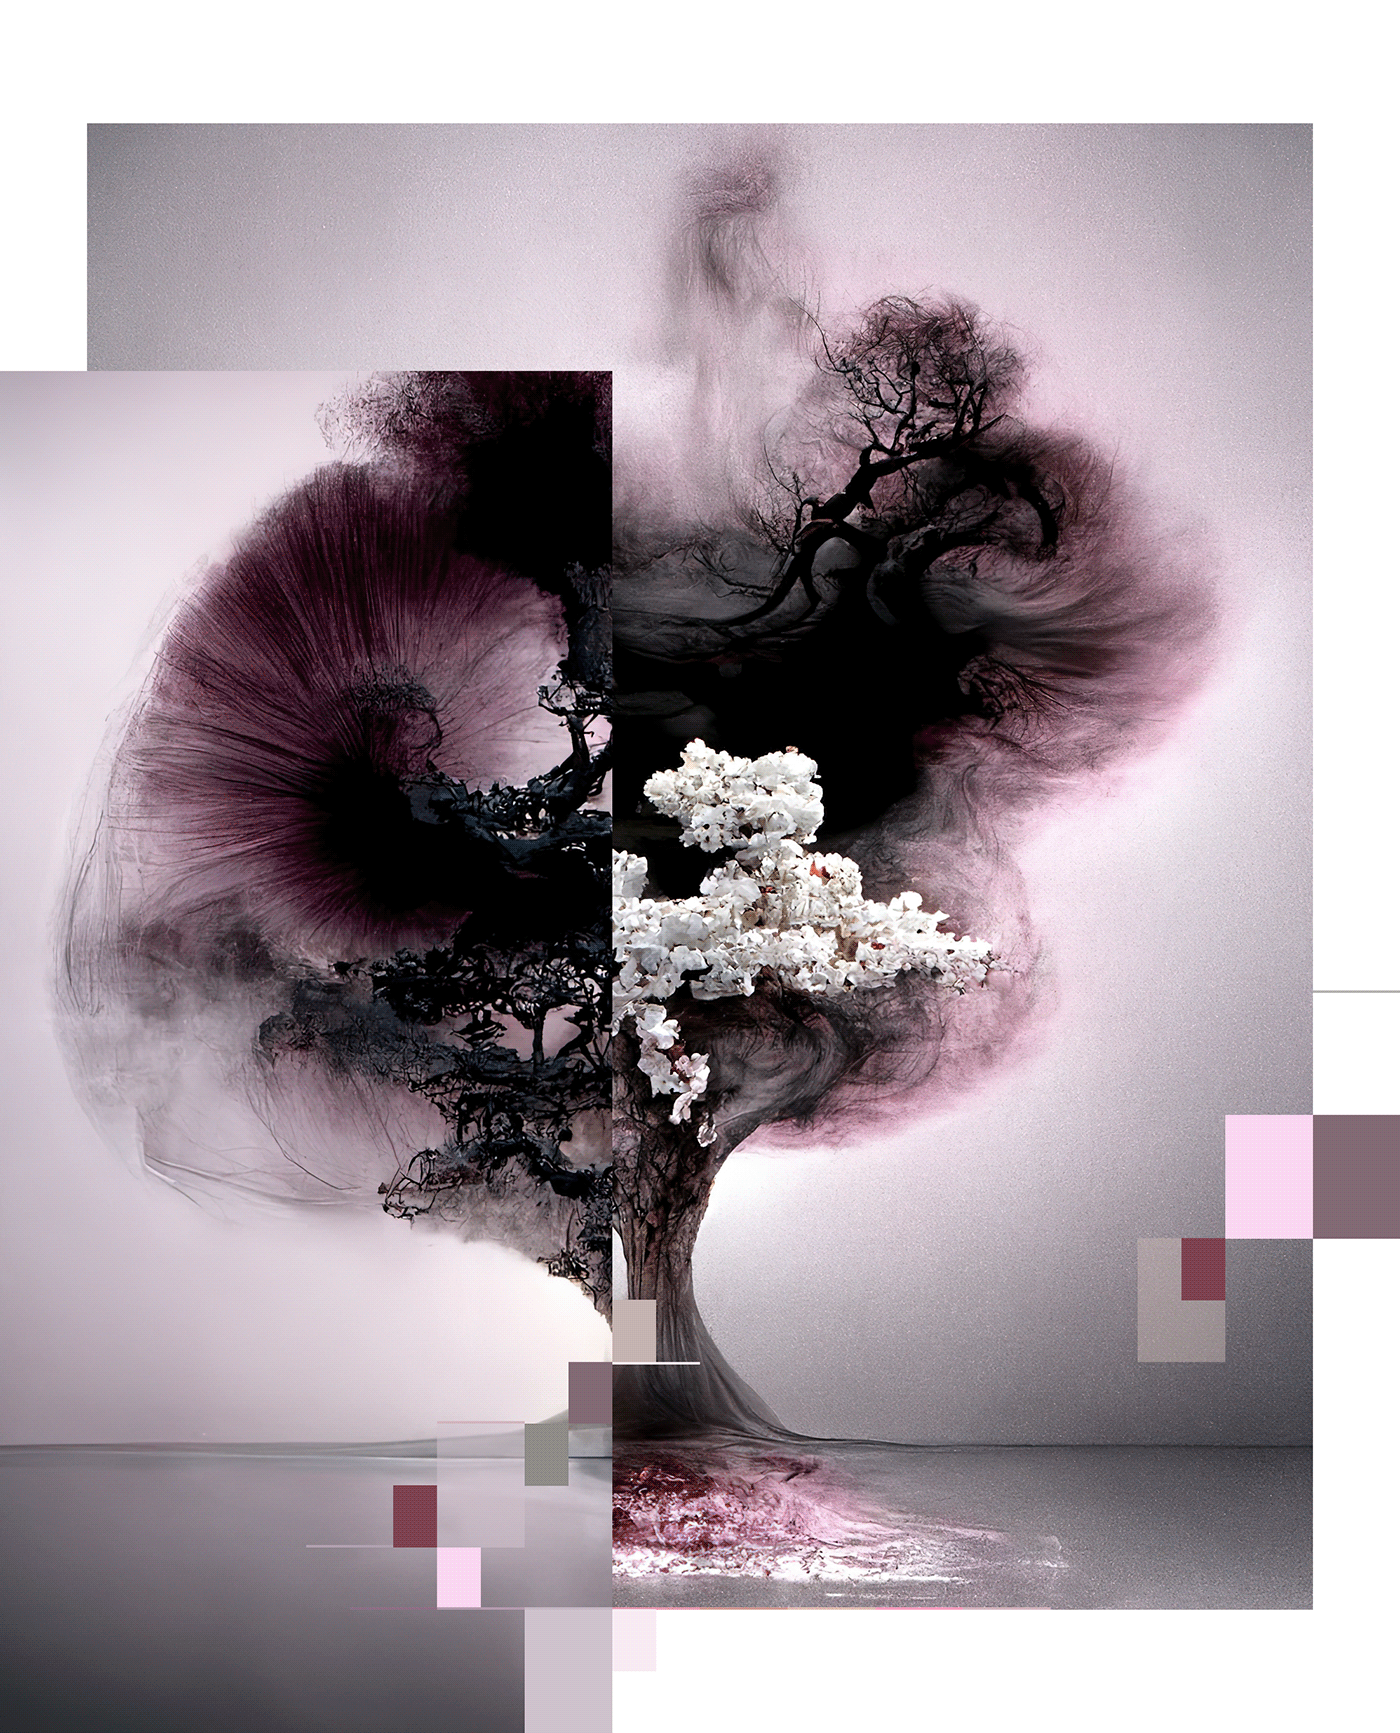 bonsai generative art